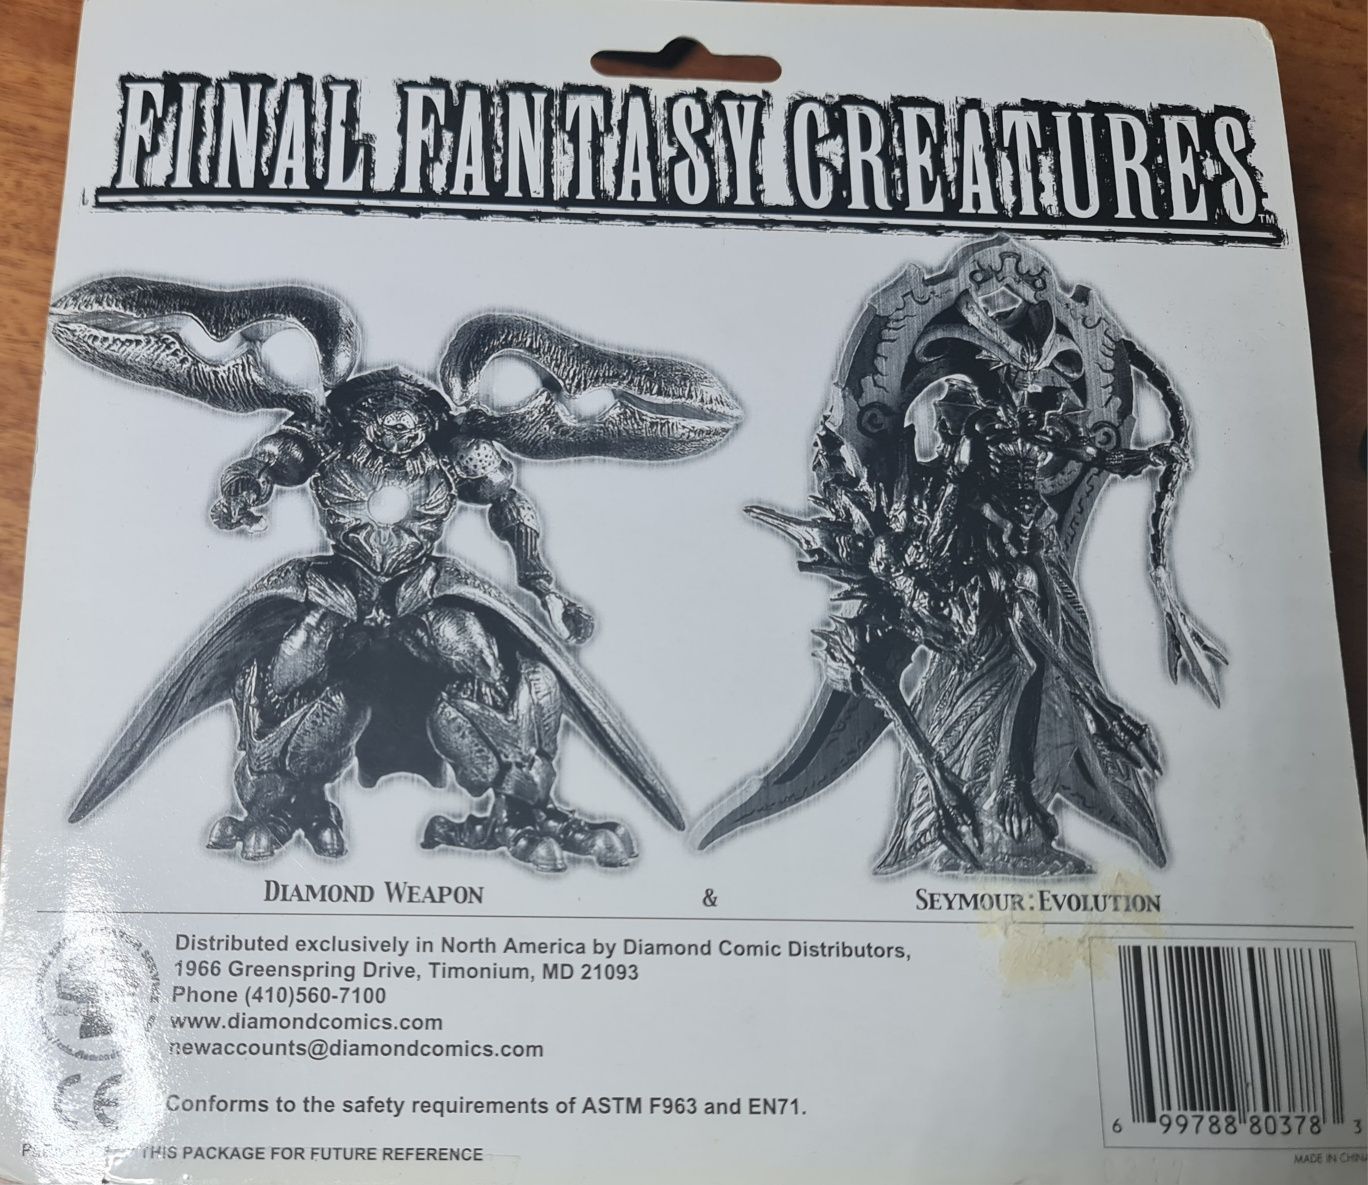 Figurki z Final Fantasy Creatures, dwa zestawy